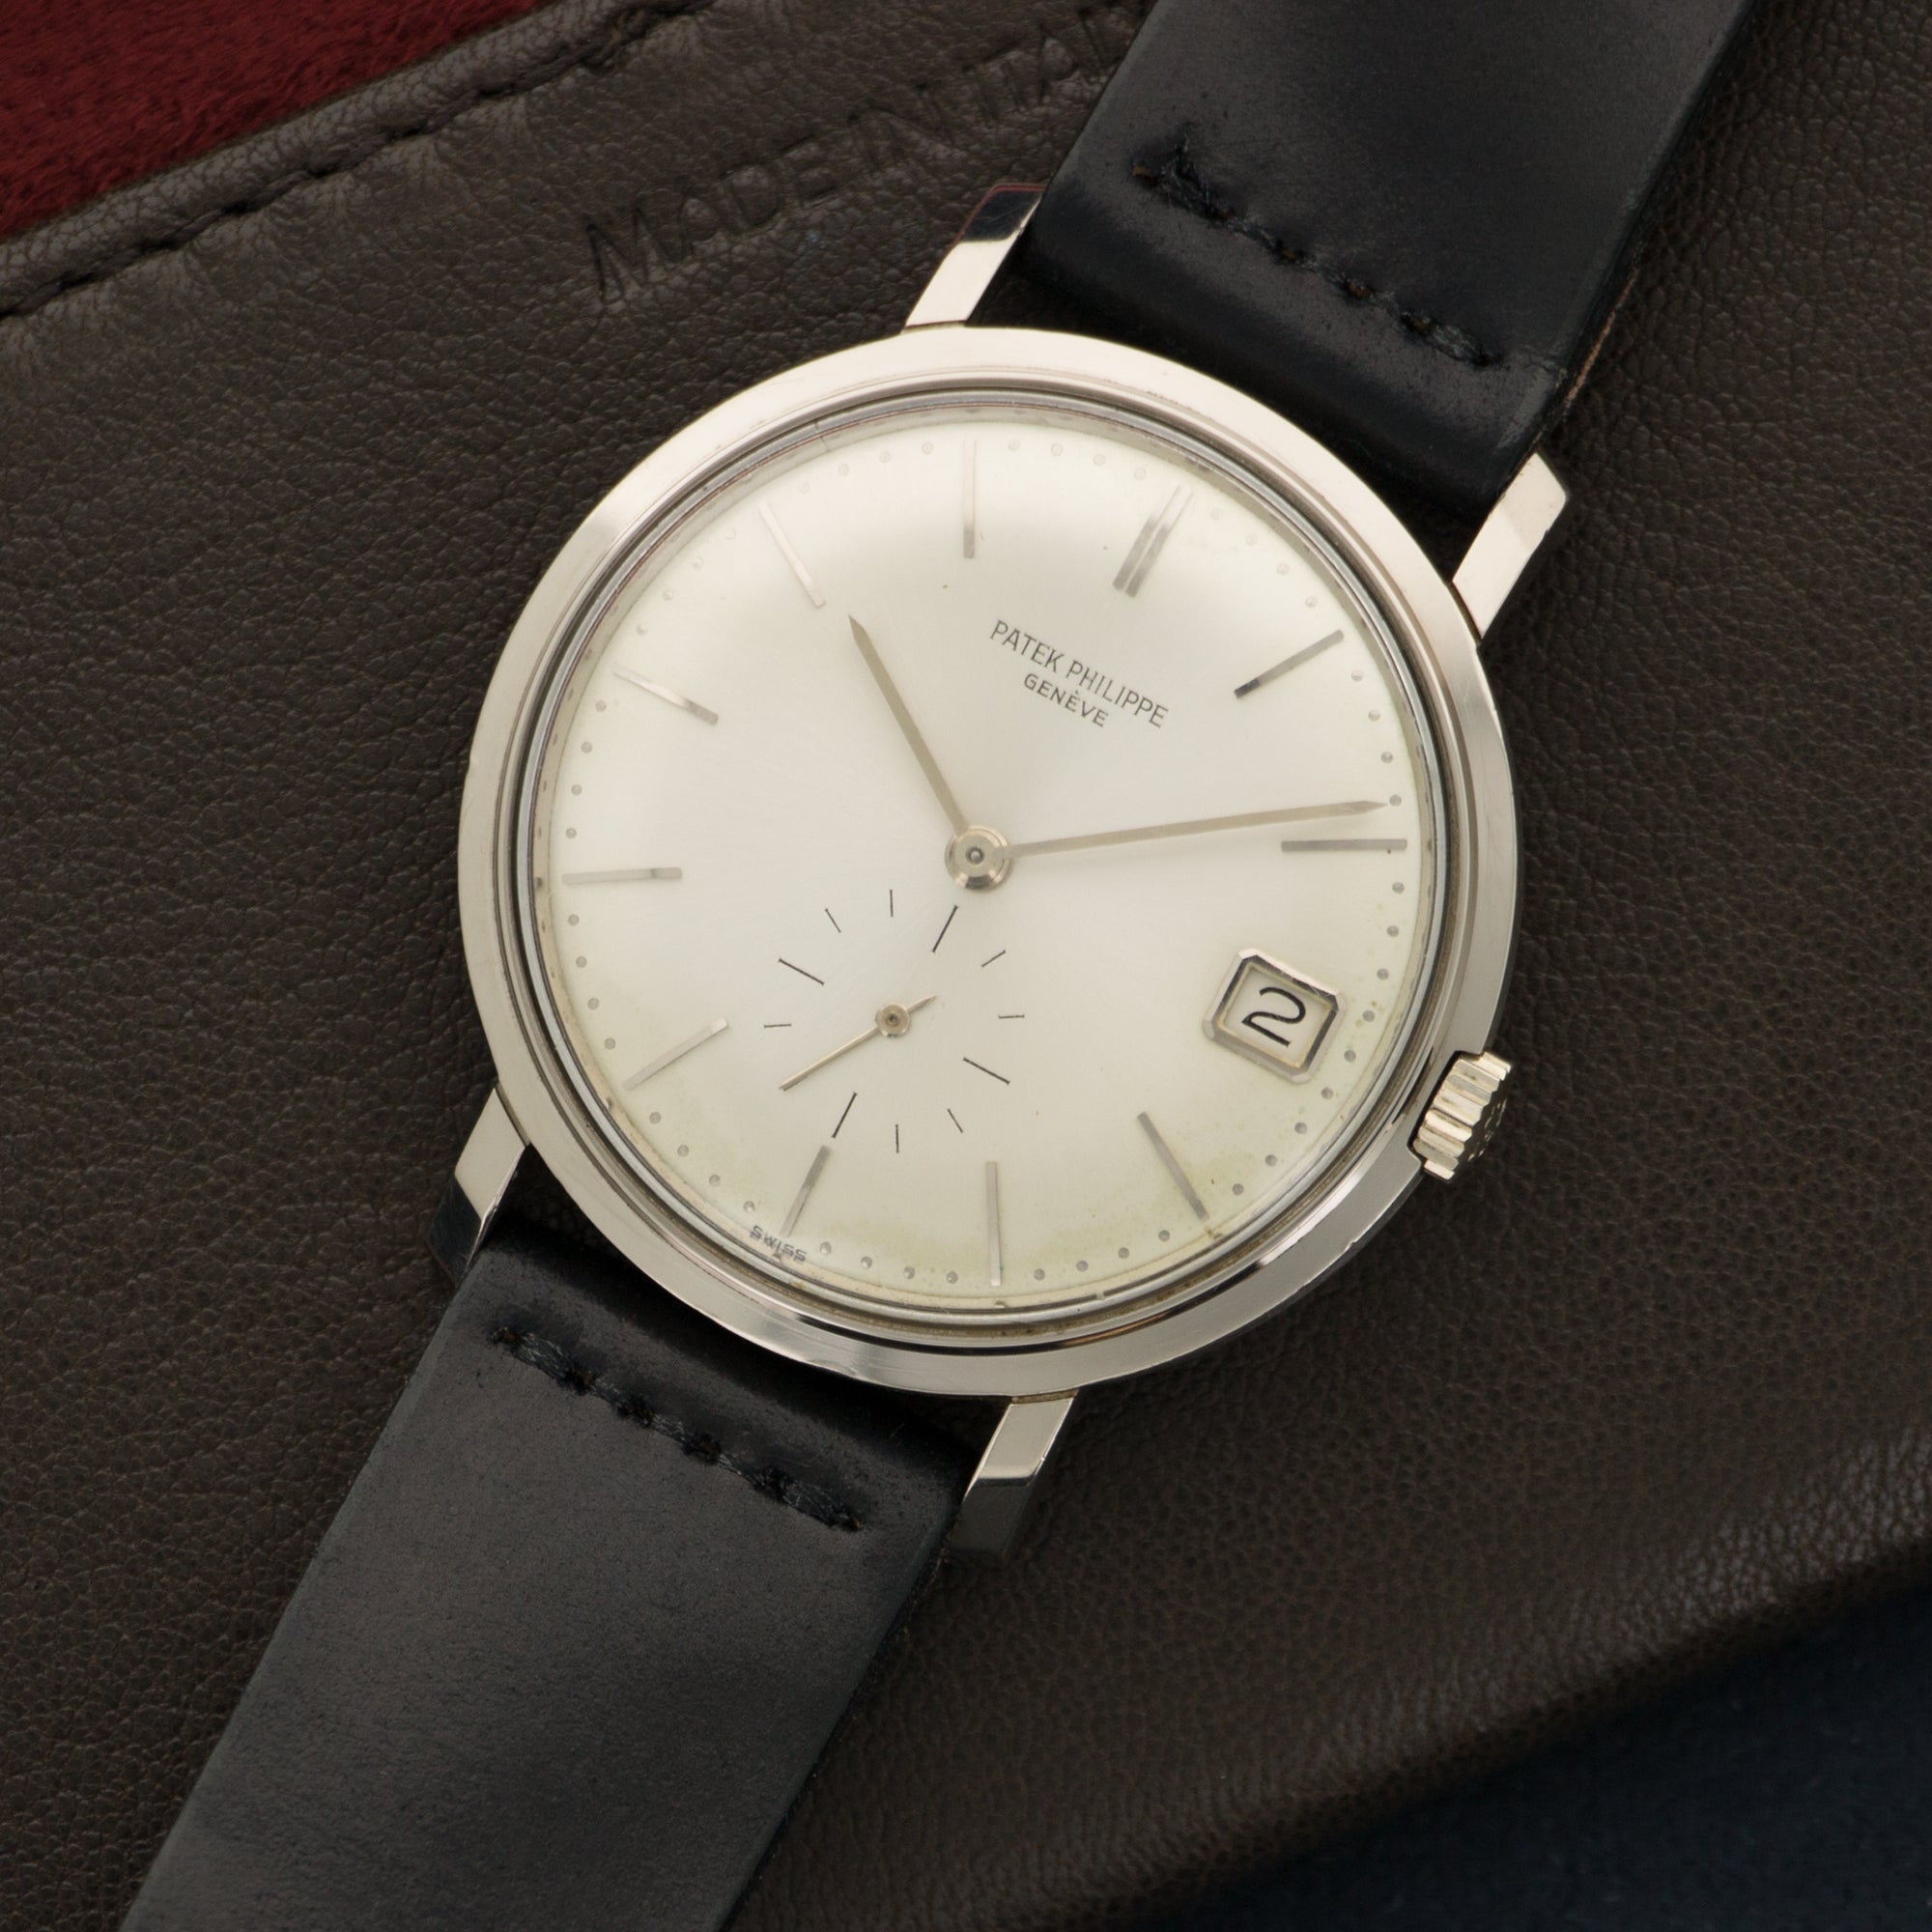 Patek Philippe - Patek Philippe White Gold Calatrava Watch Ref. 3445G - The Keystone Watches